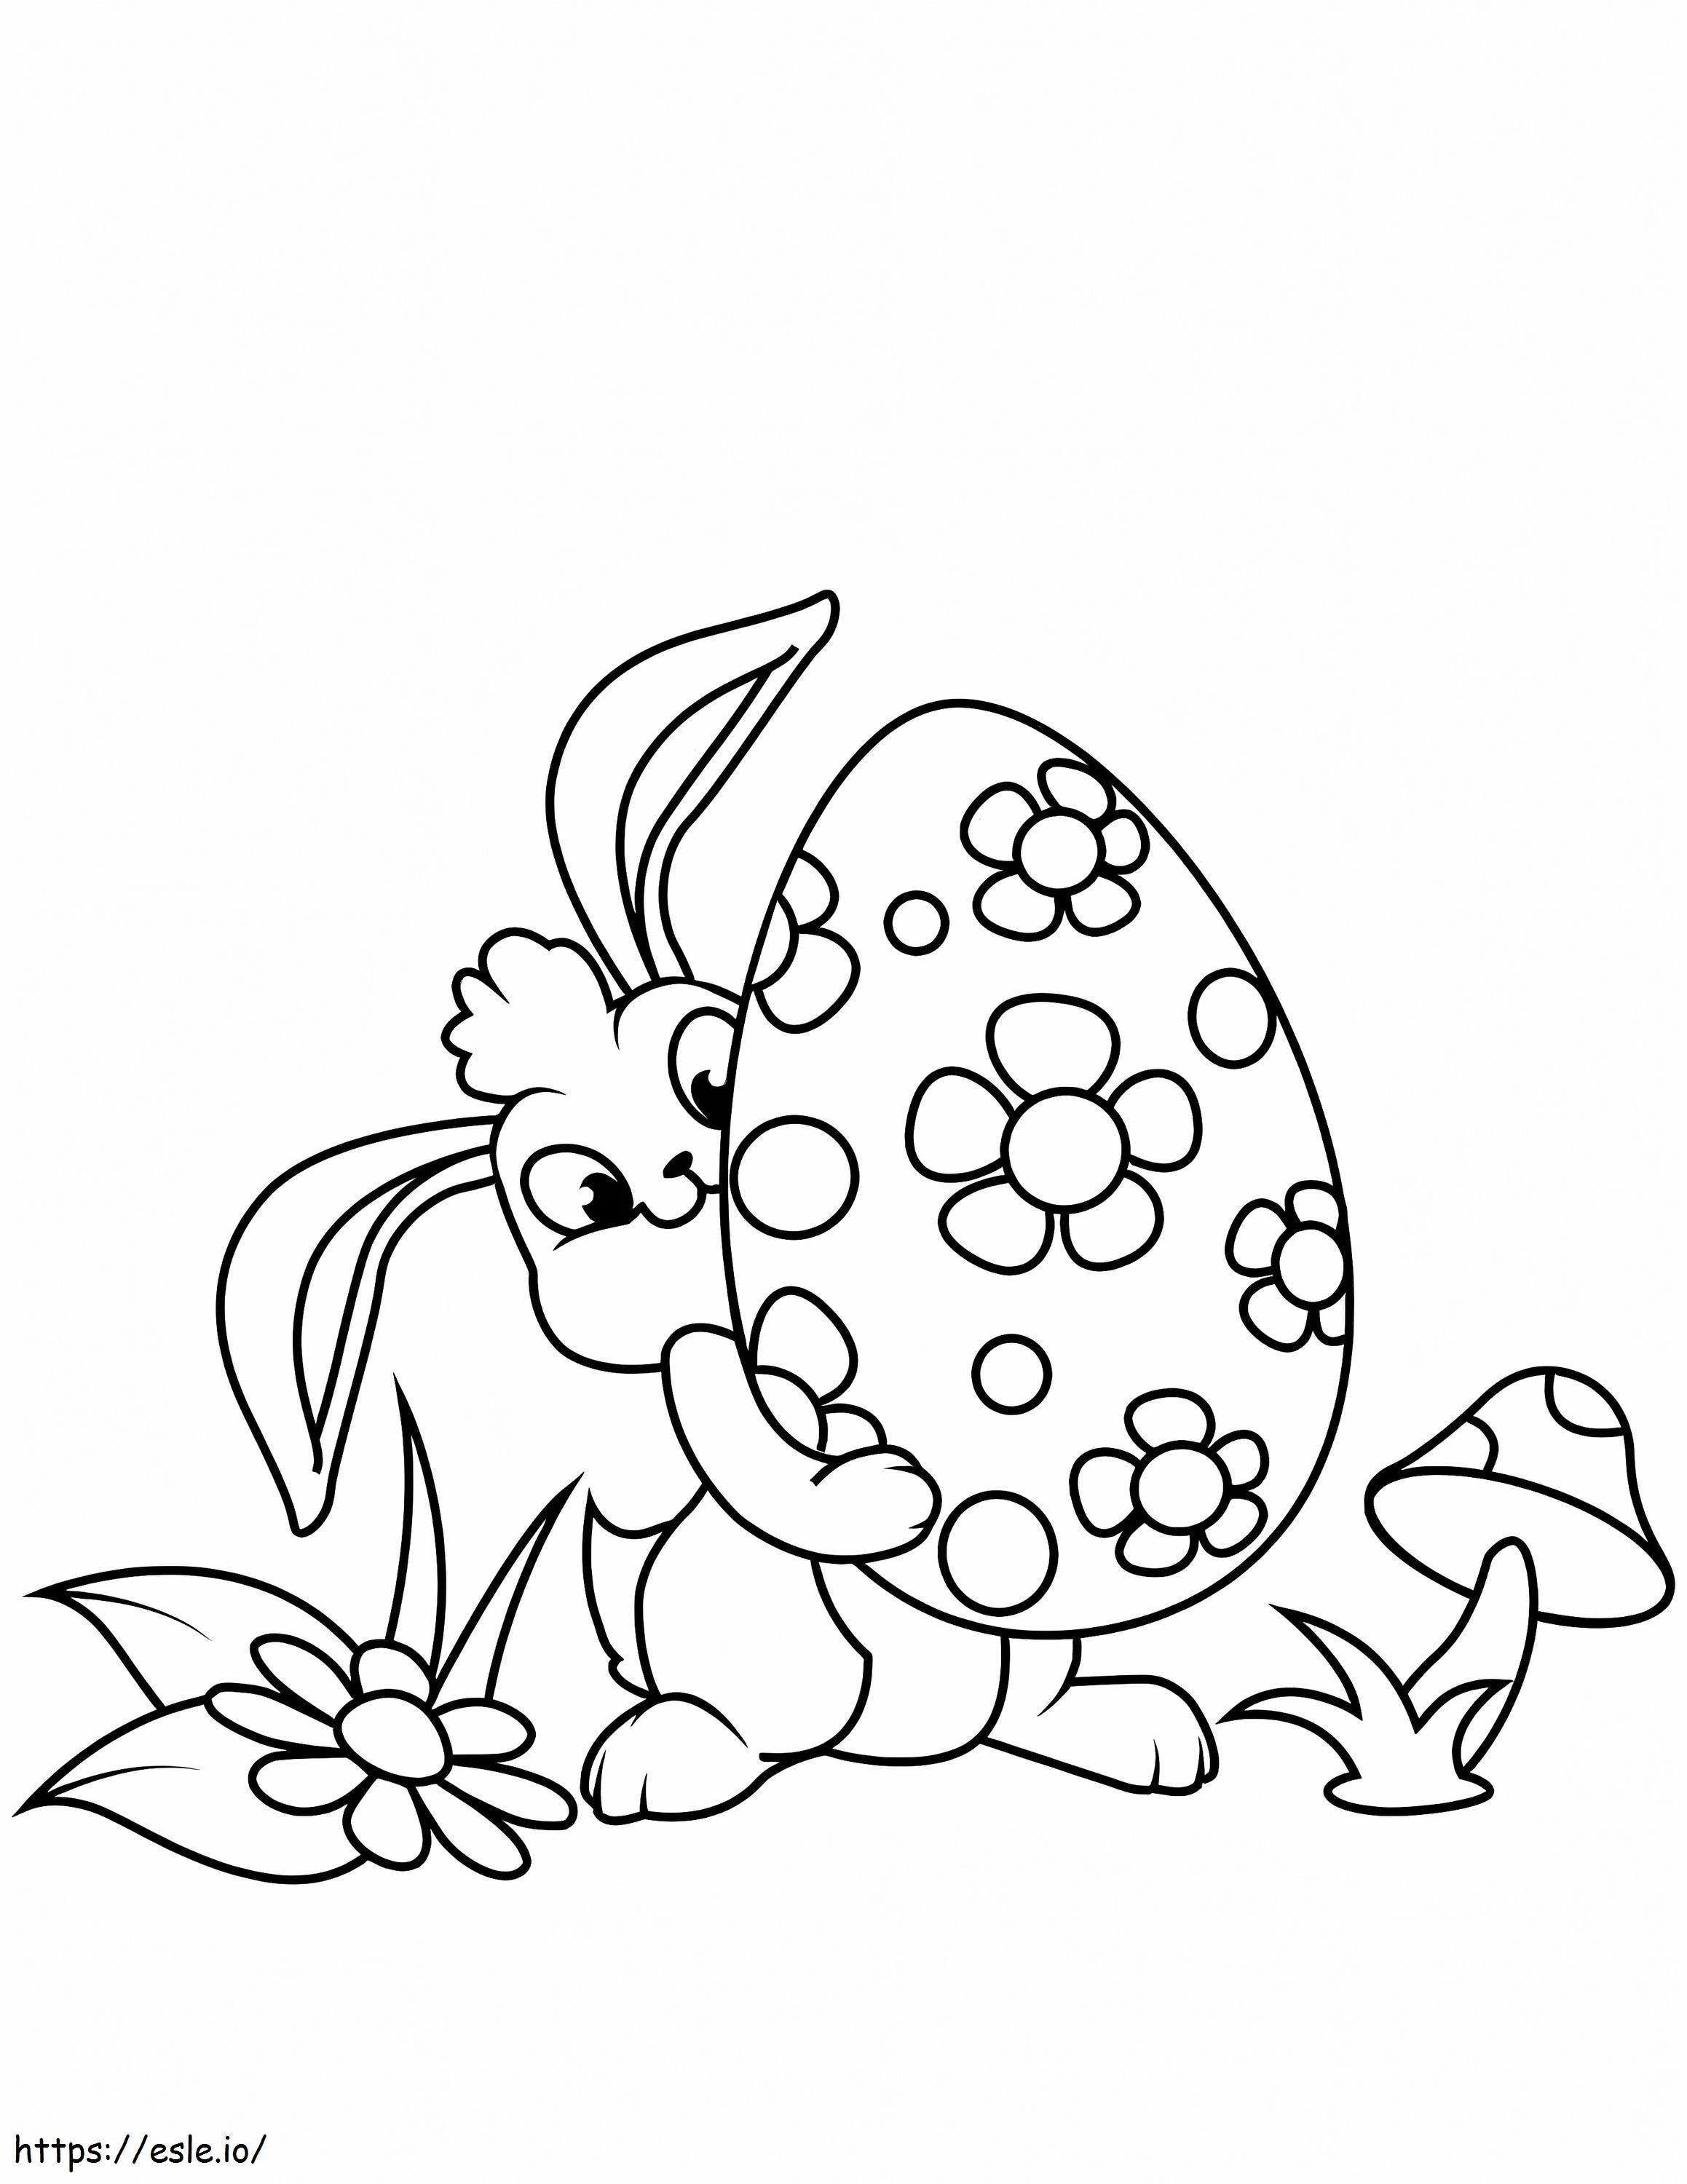 Conejo de Pascua con huevo para colorear